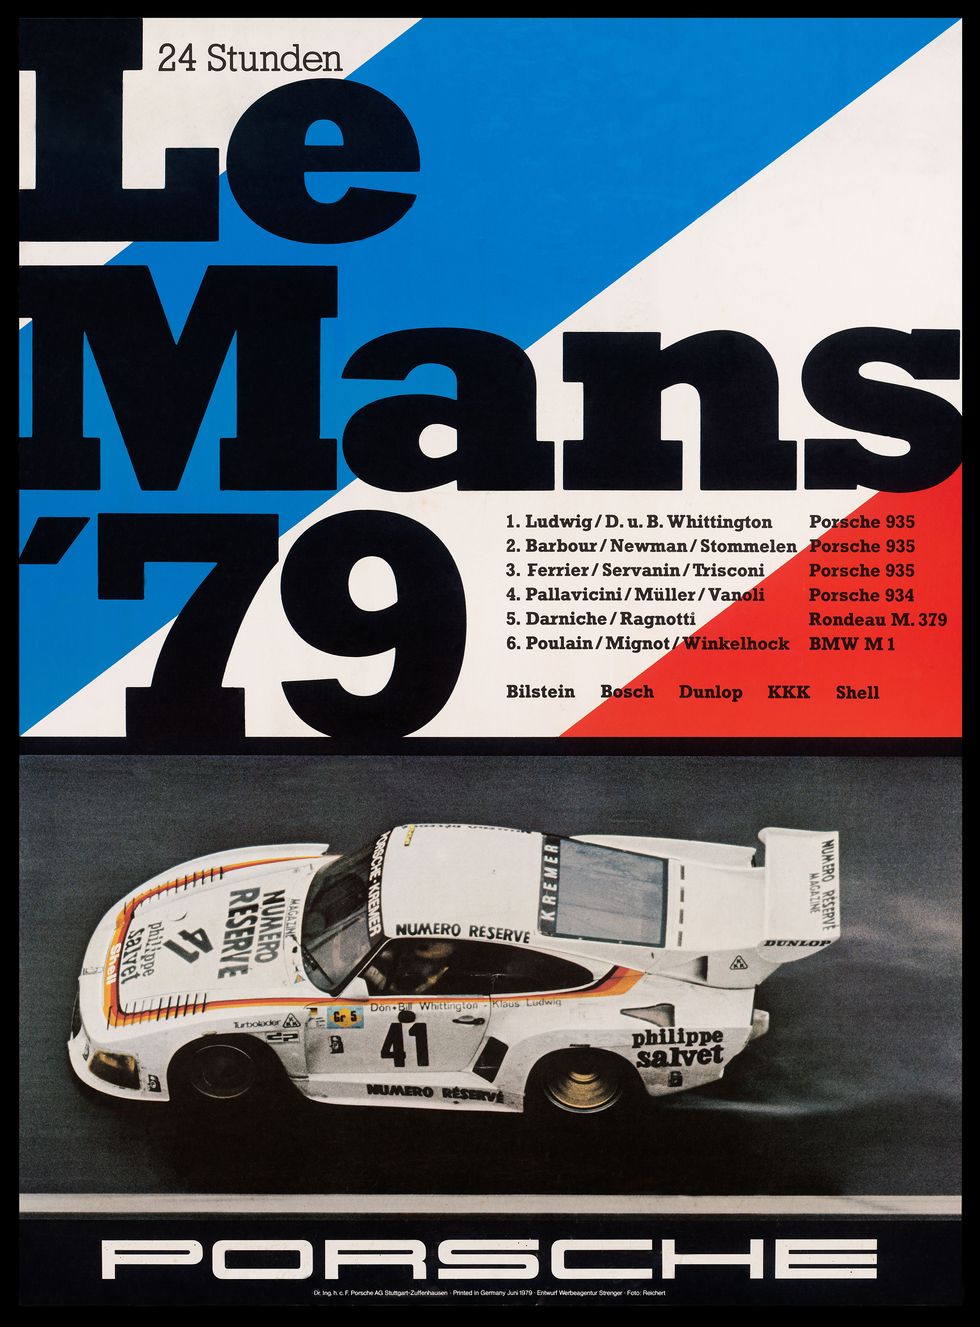 Le Mans 1979 Poster